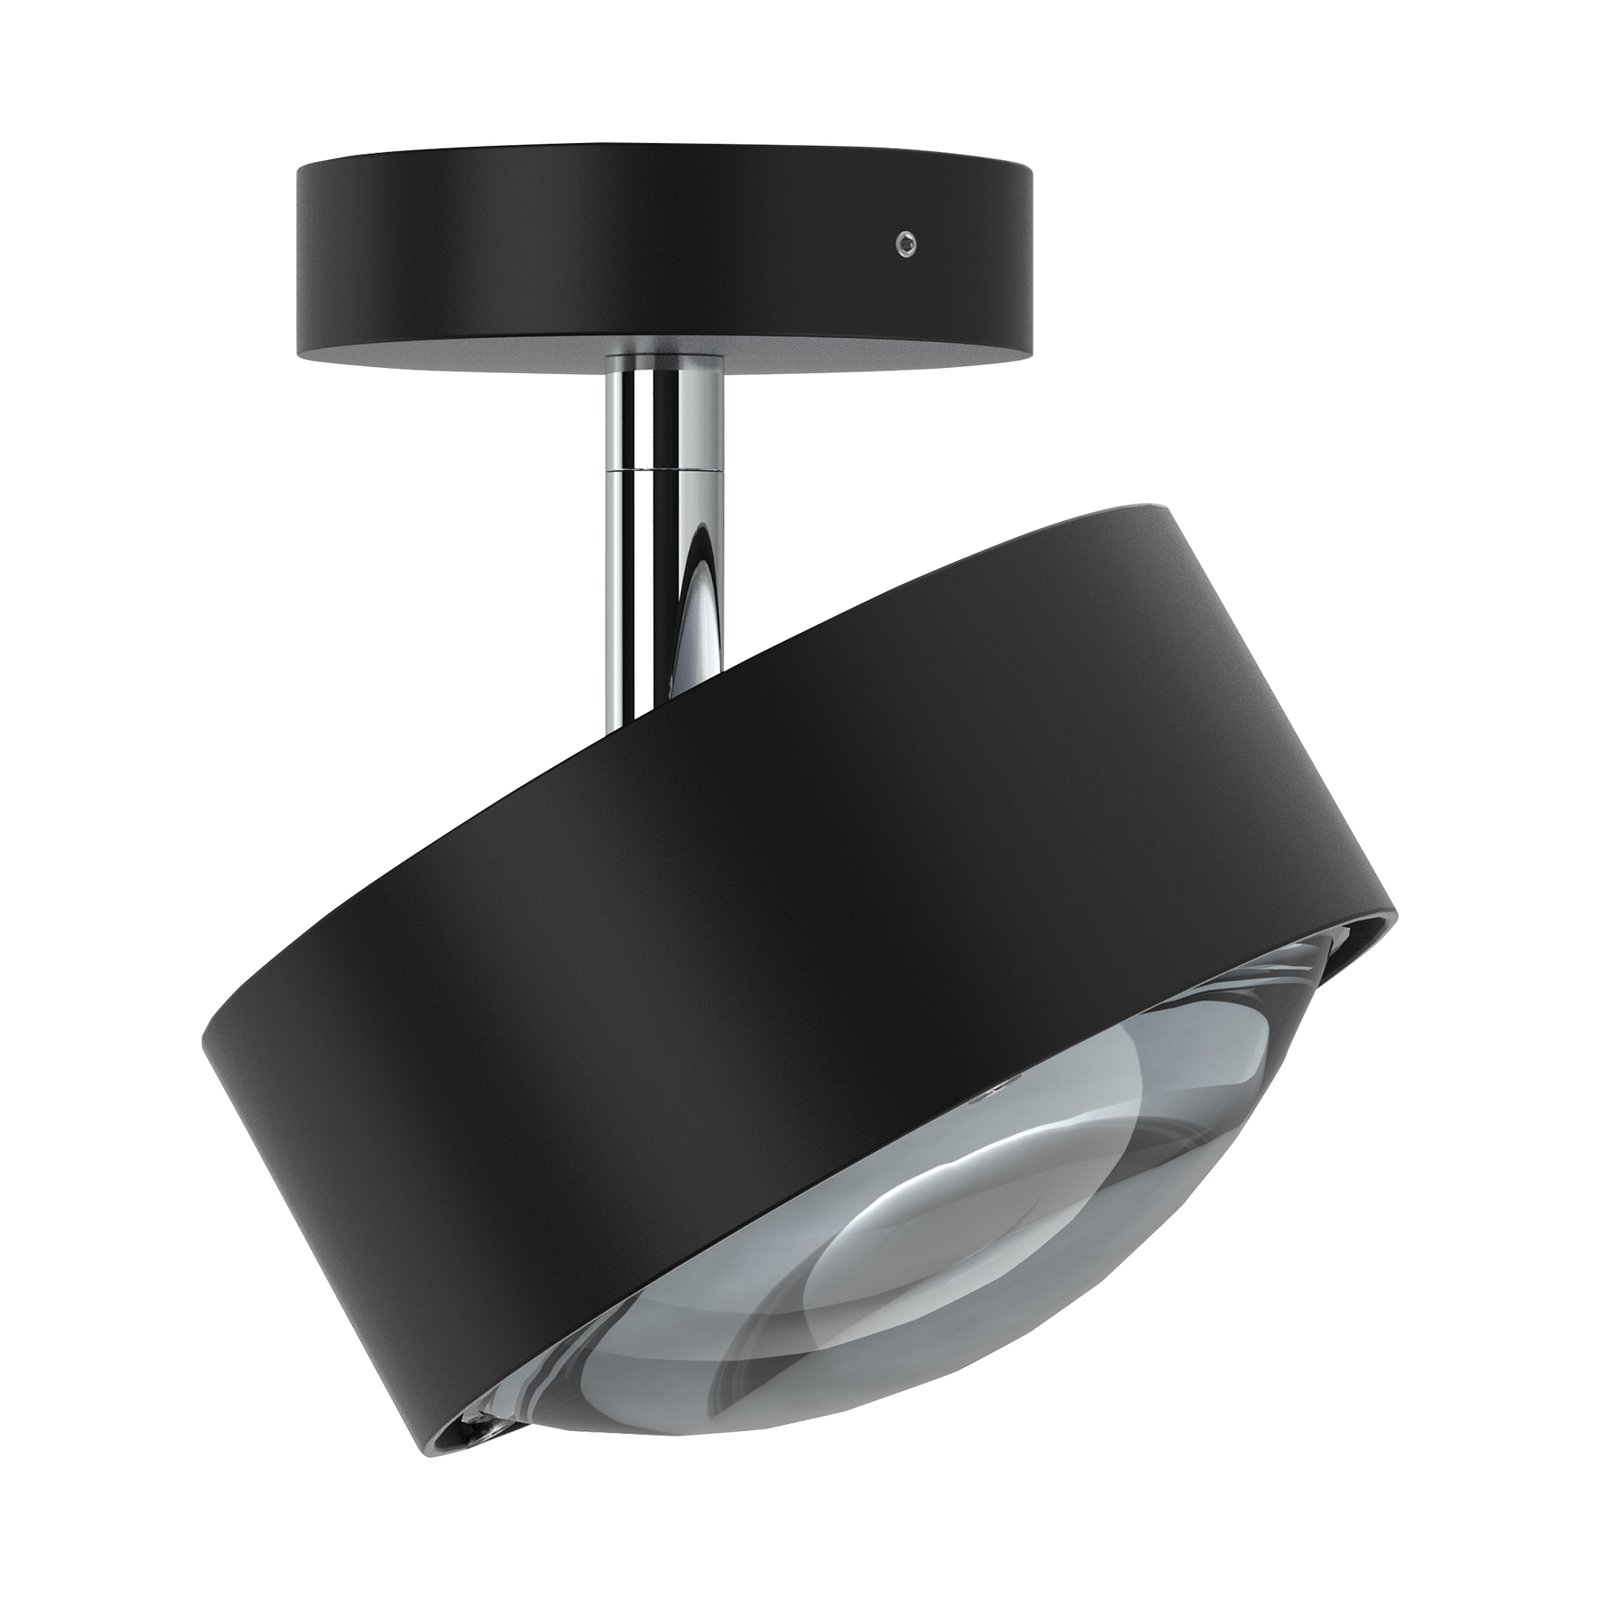 Puk Maxx Turn φακός προβολέα LED διαφανής 1fl μαύρο ματ